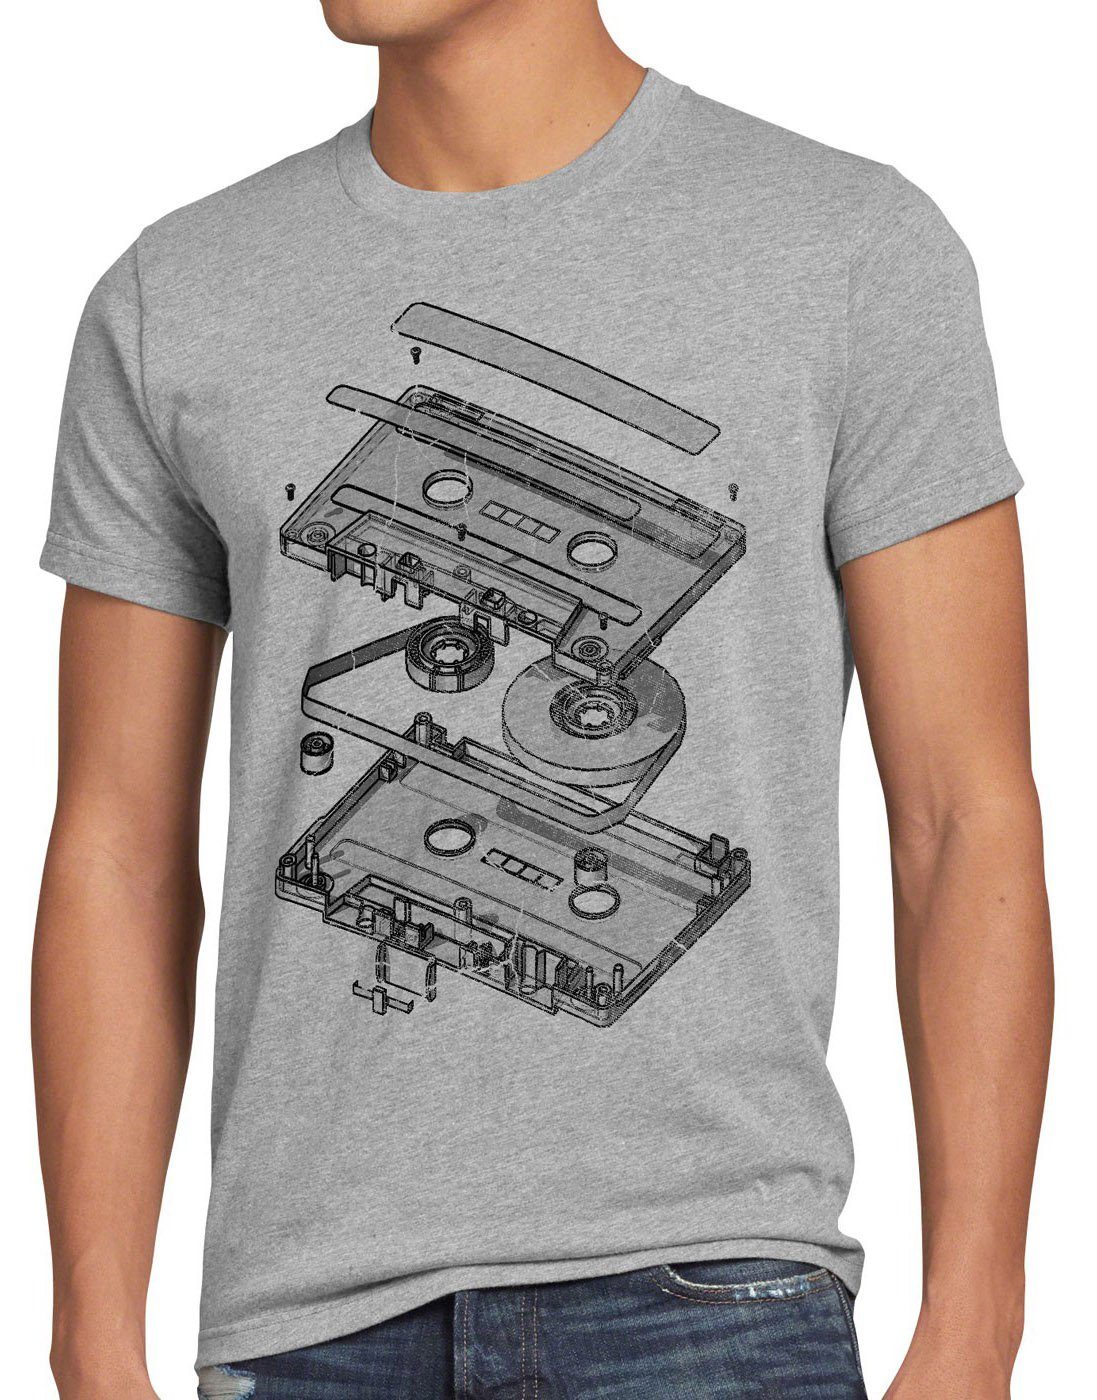 cd dj style3 Print-Shirt 3D grau mc meliert T-Shirt Herren 80er disko Kassette turntable analog ndw vinyl Tape